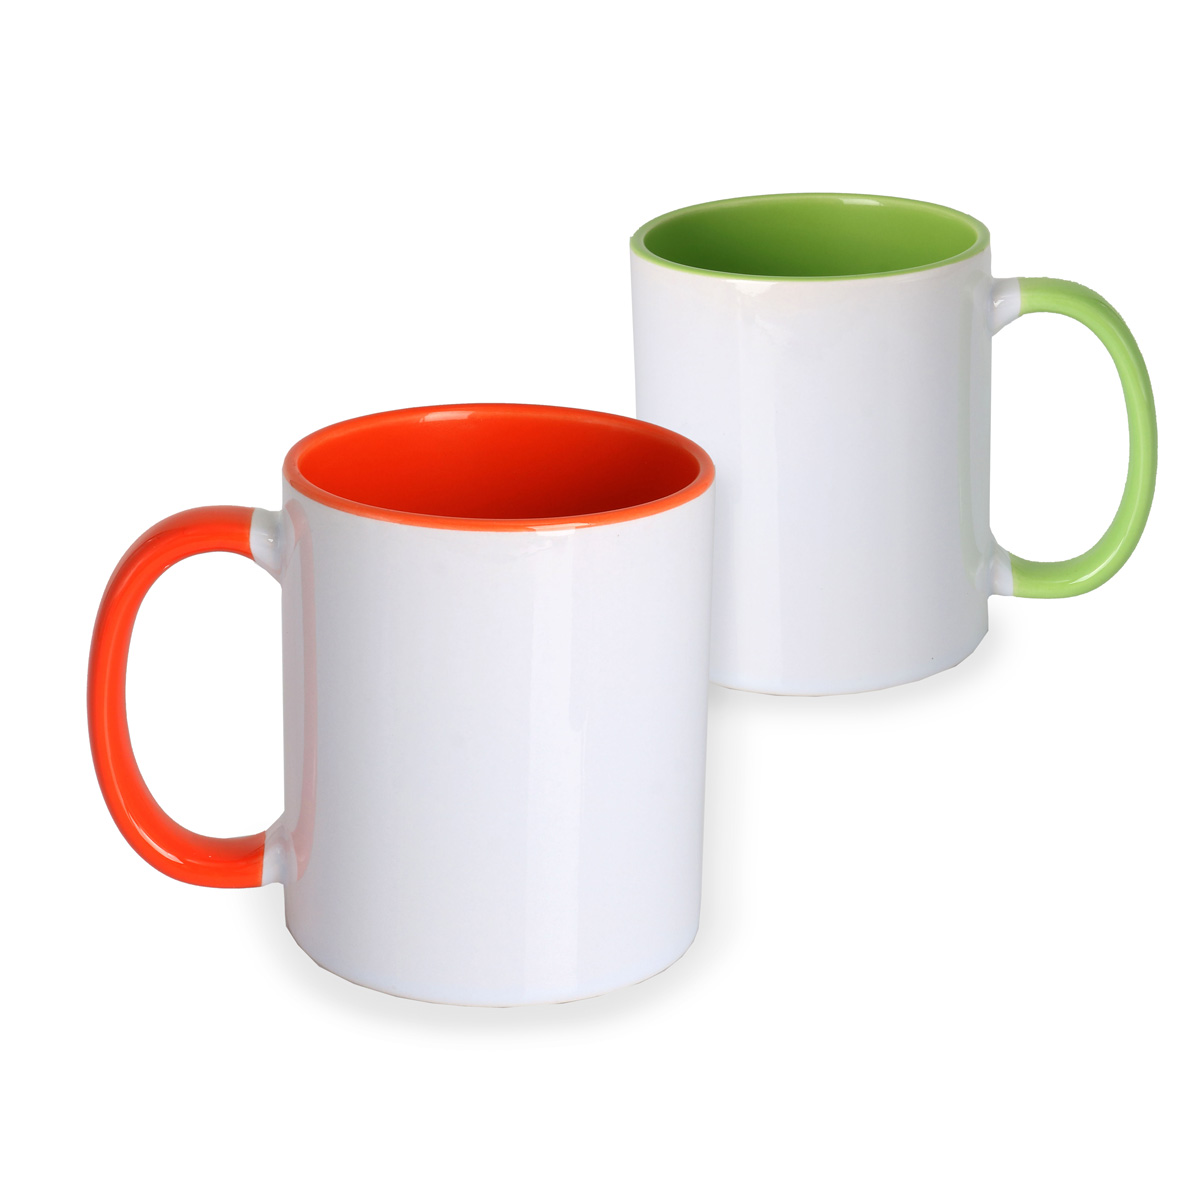 Two Tone Mug Product Image